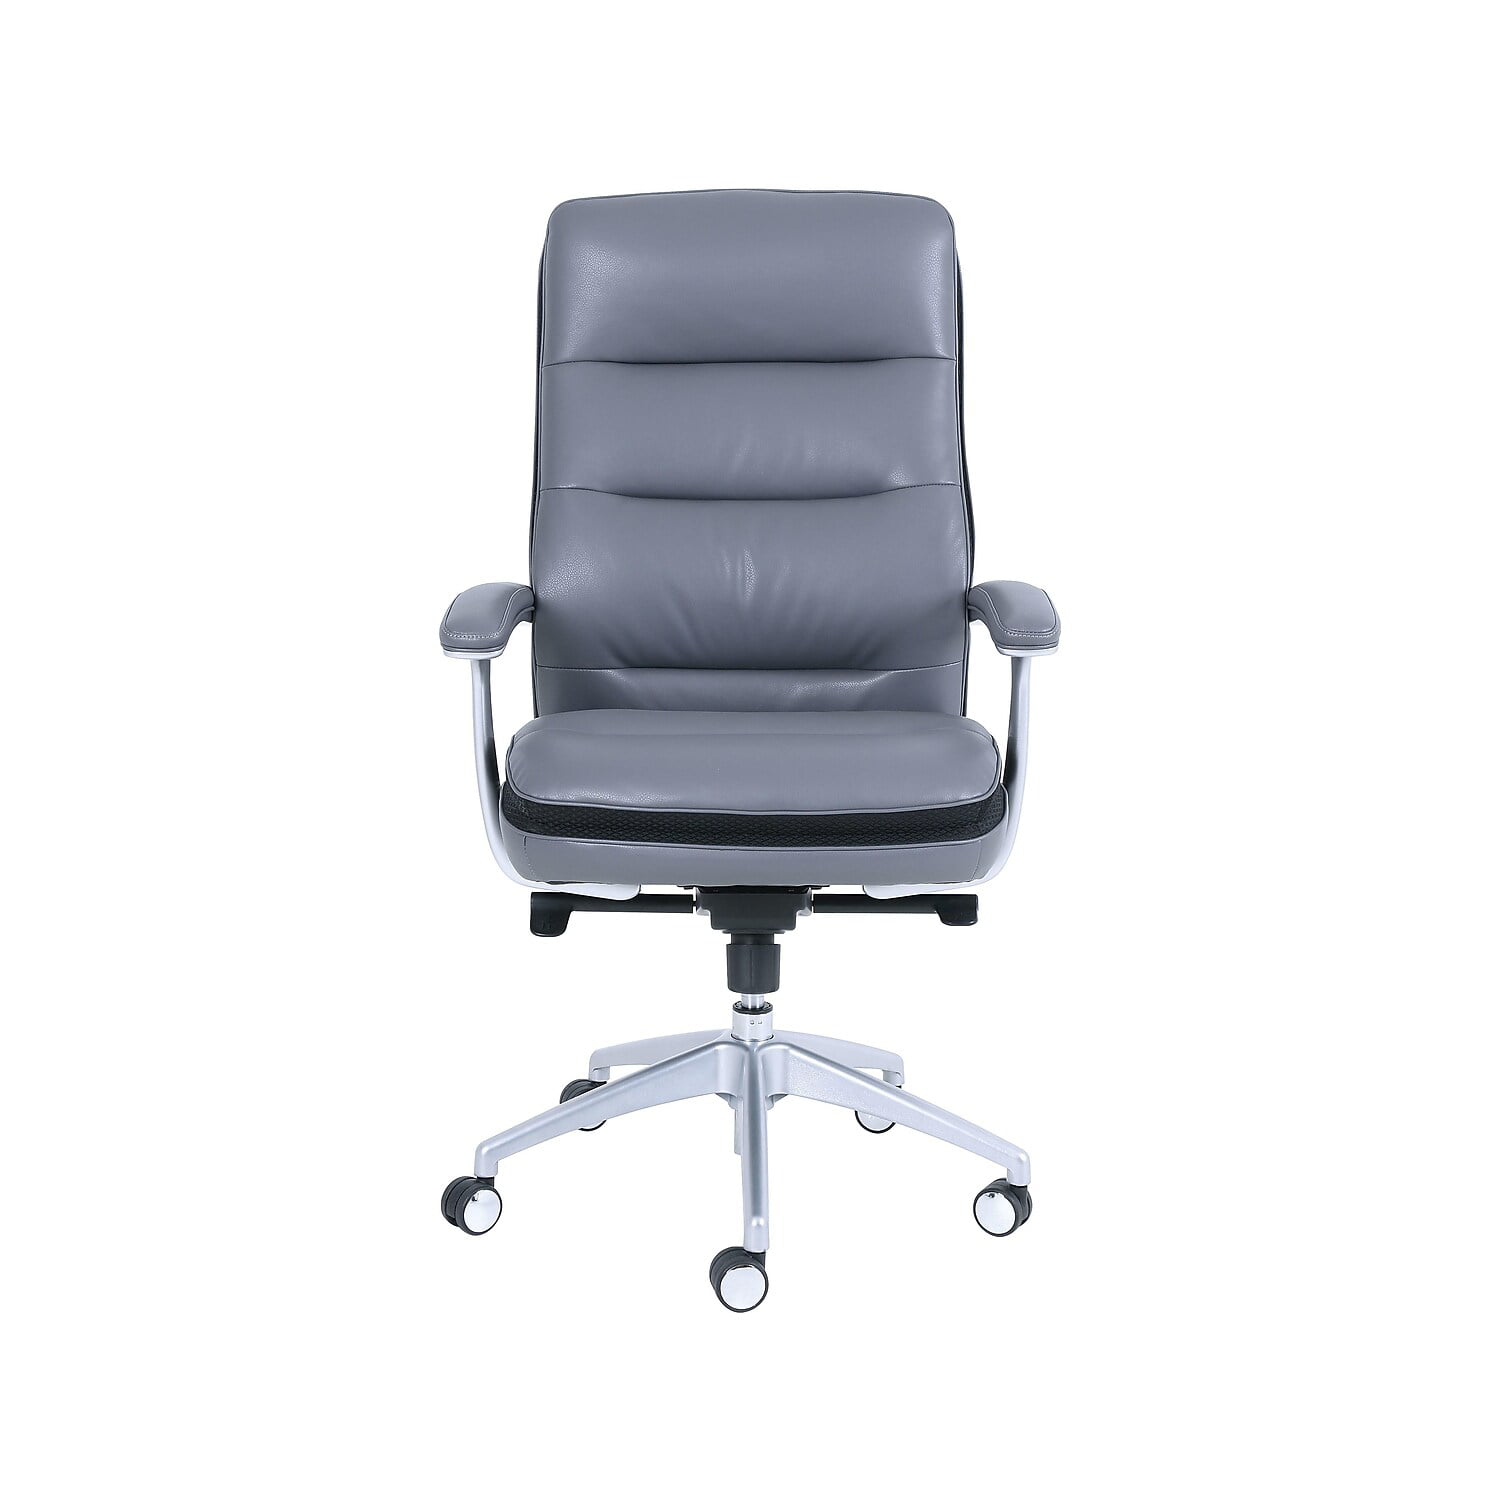 beautyrest office chair warranty